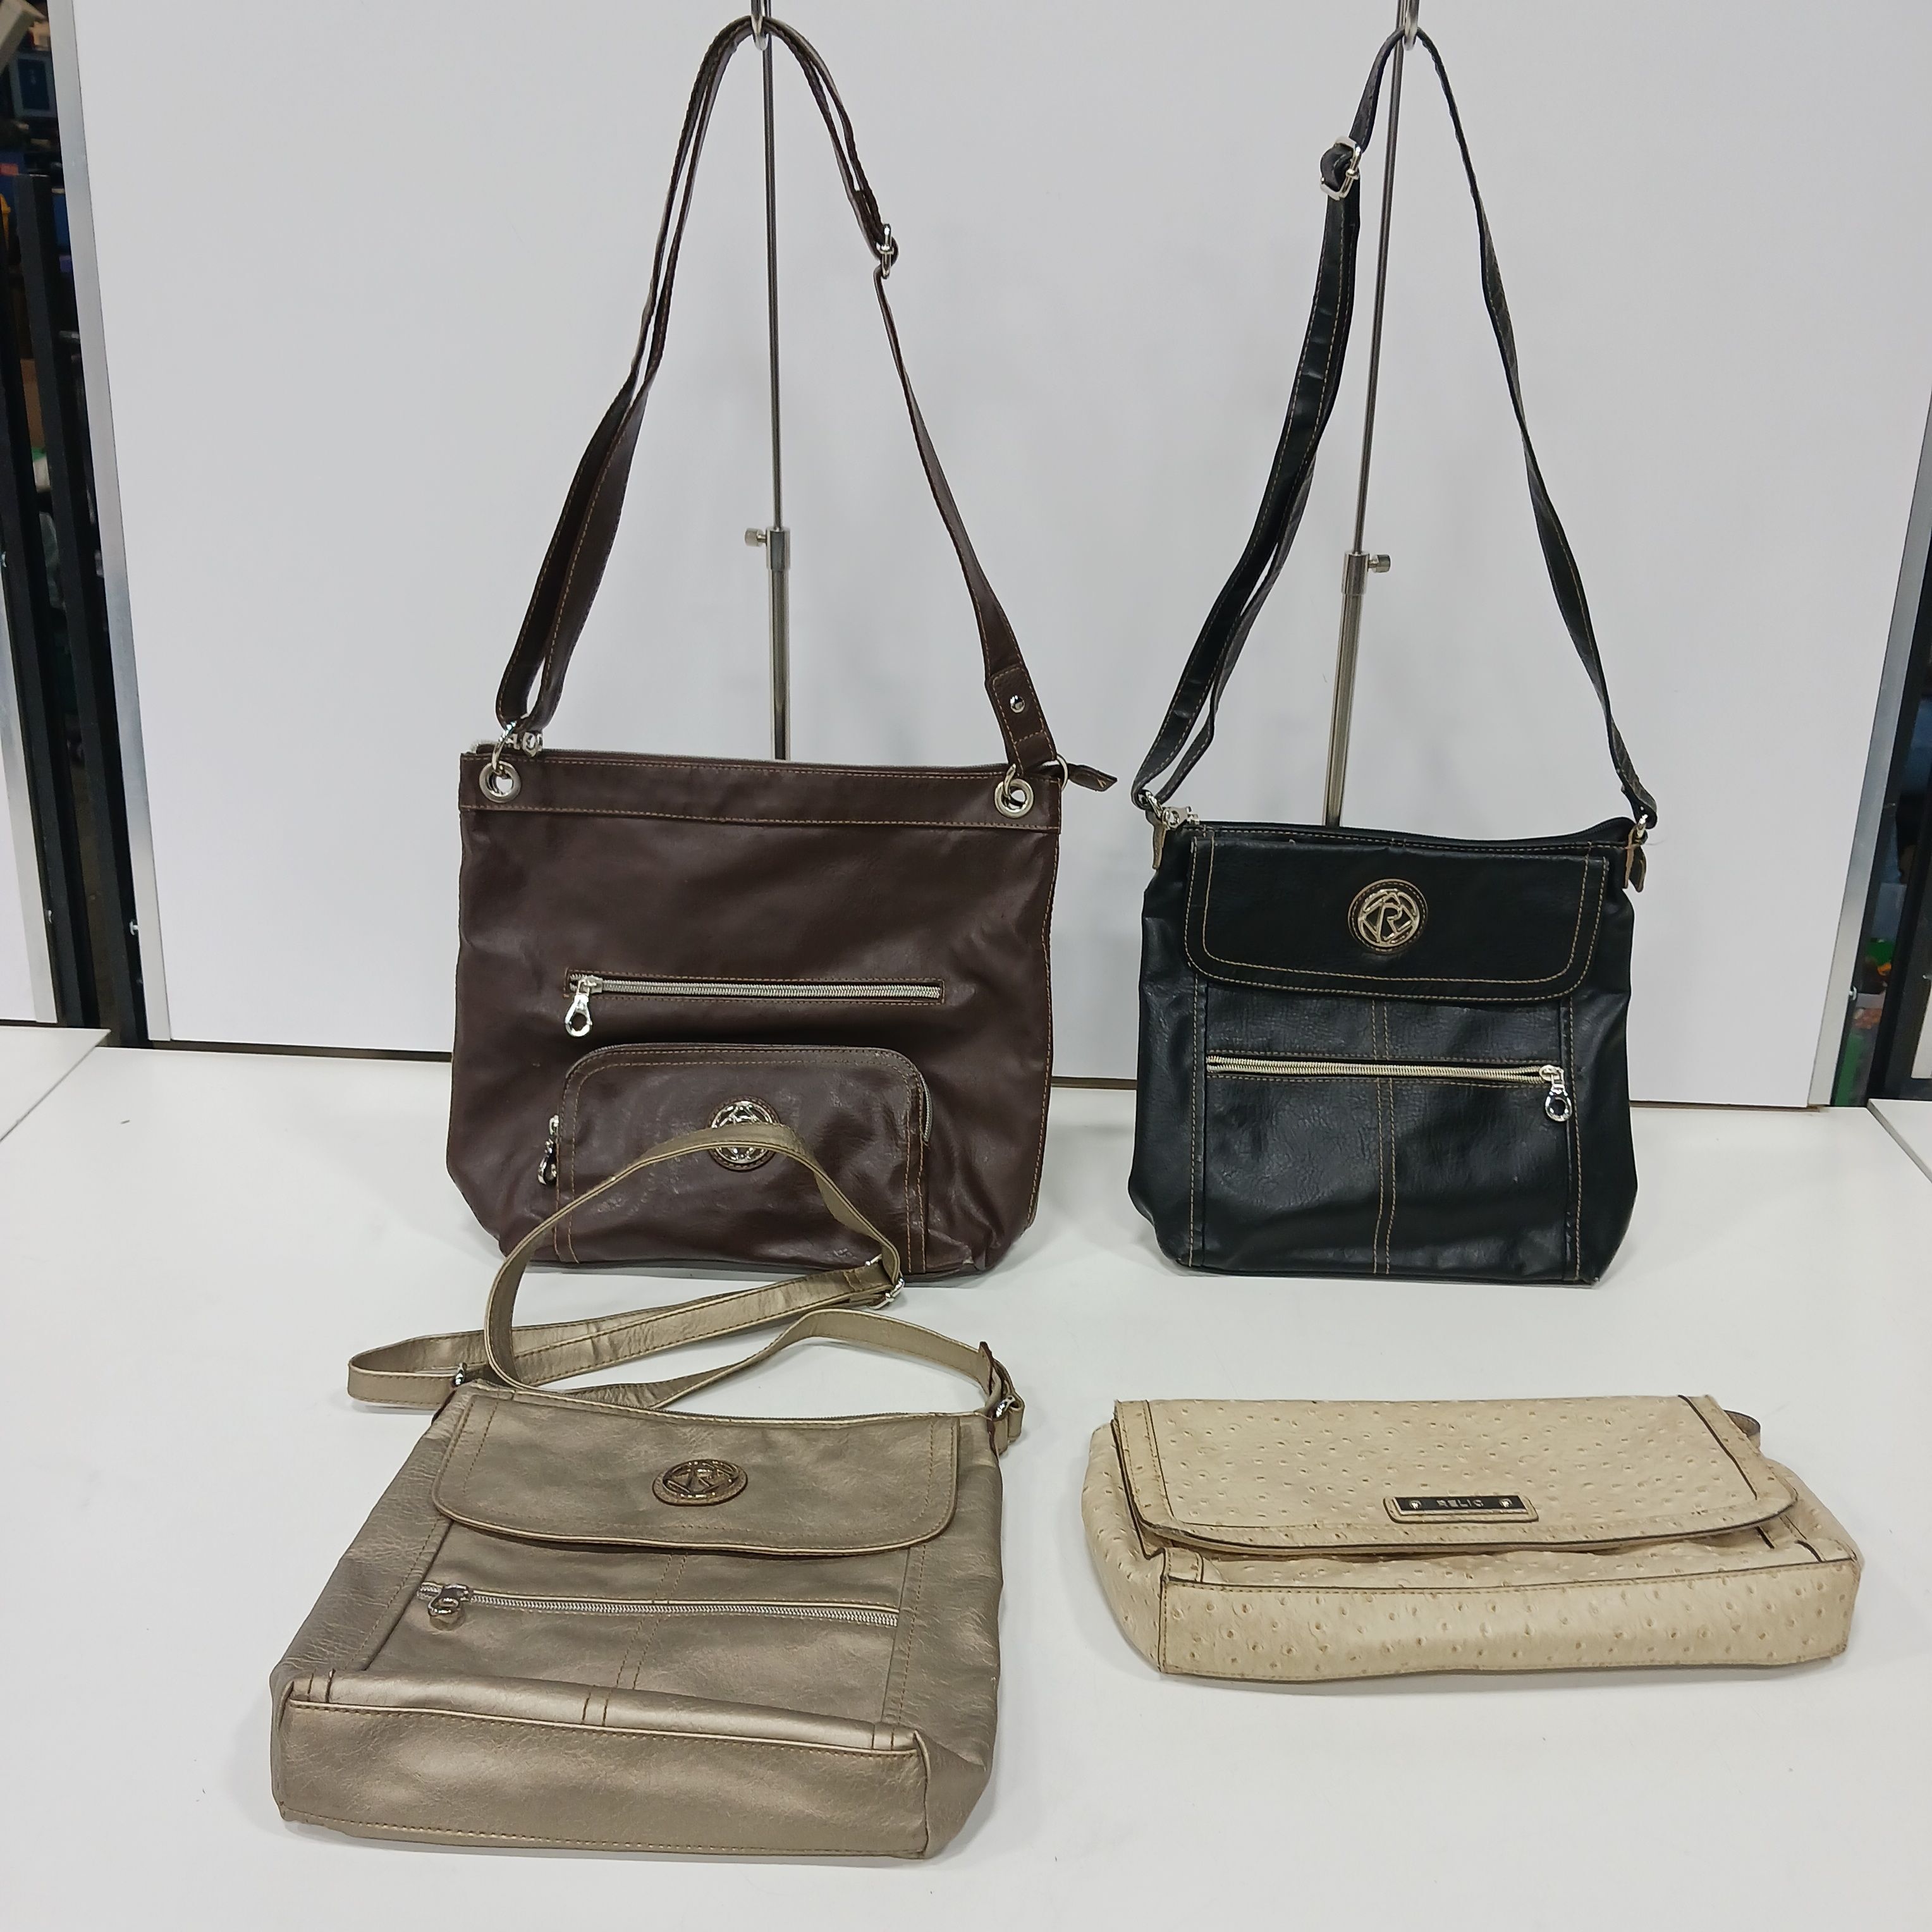 Buy Vintage Purse Classic Black Relic Handbag Online in India - Etsy